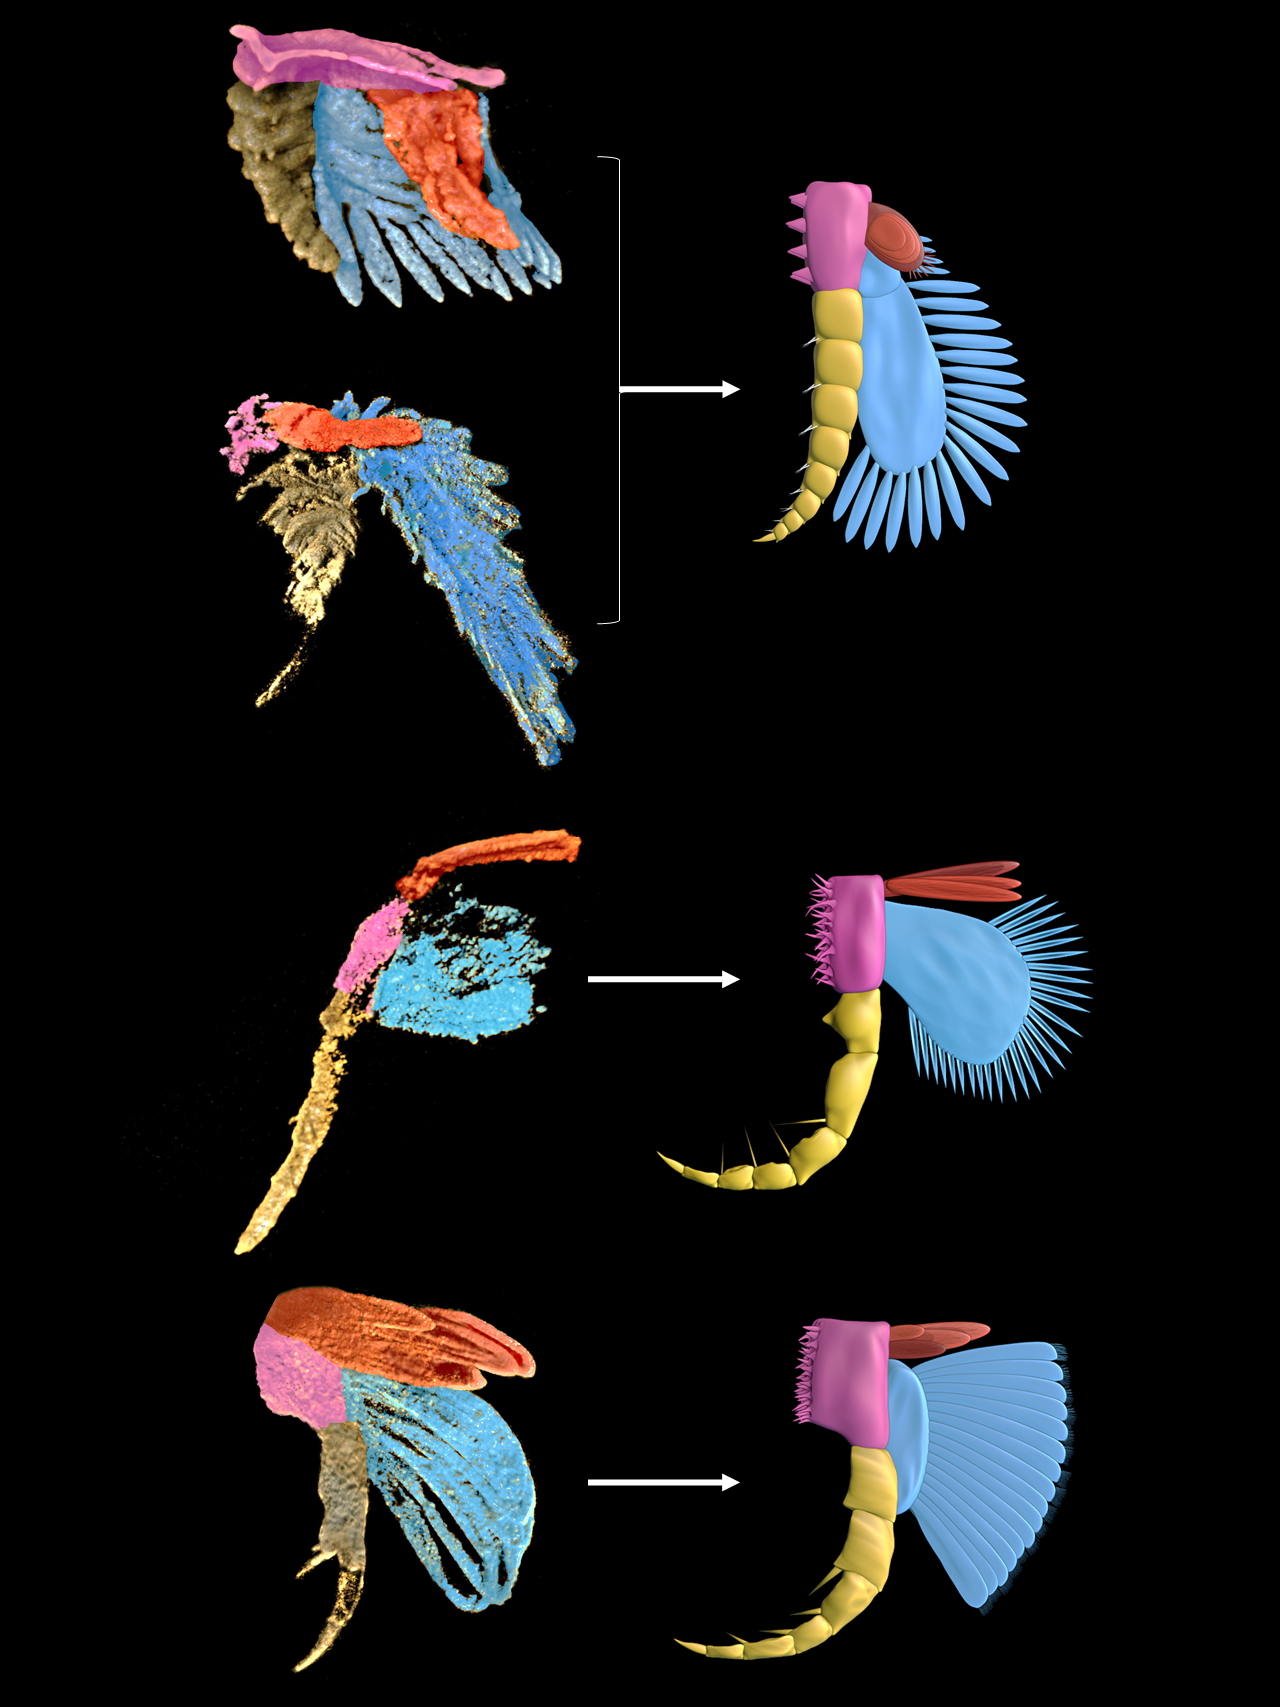 利用显微CT研究发现早寒武世澄江生物群节肢动